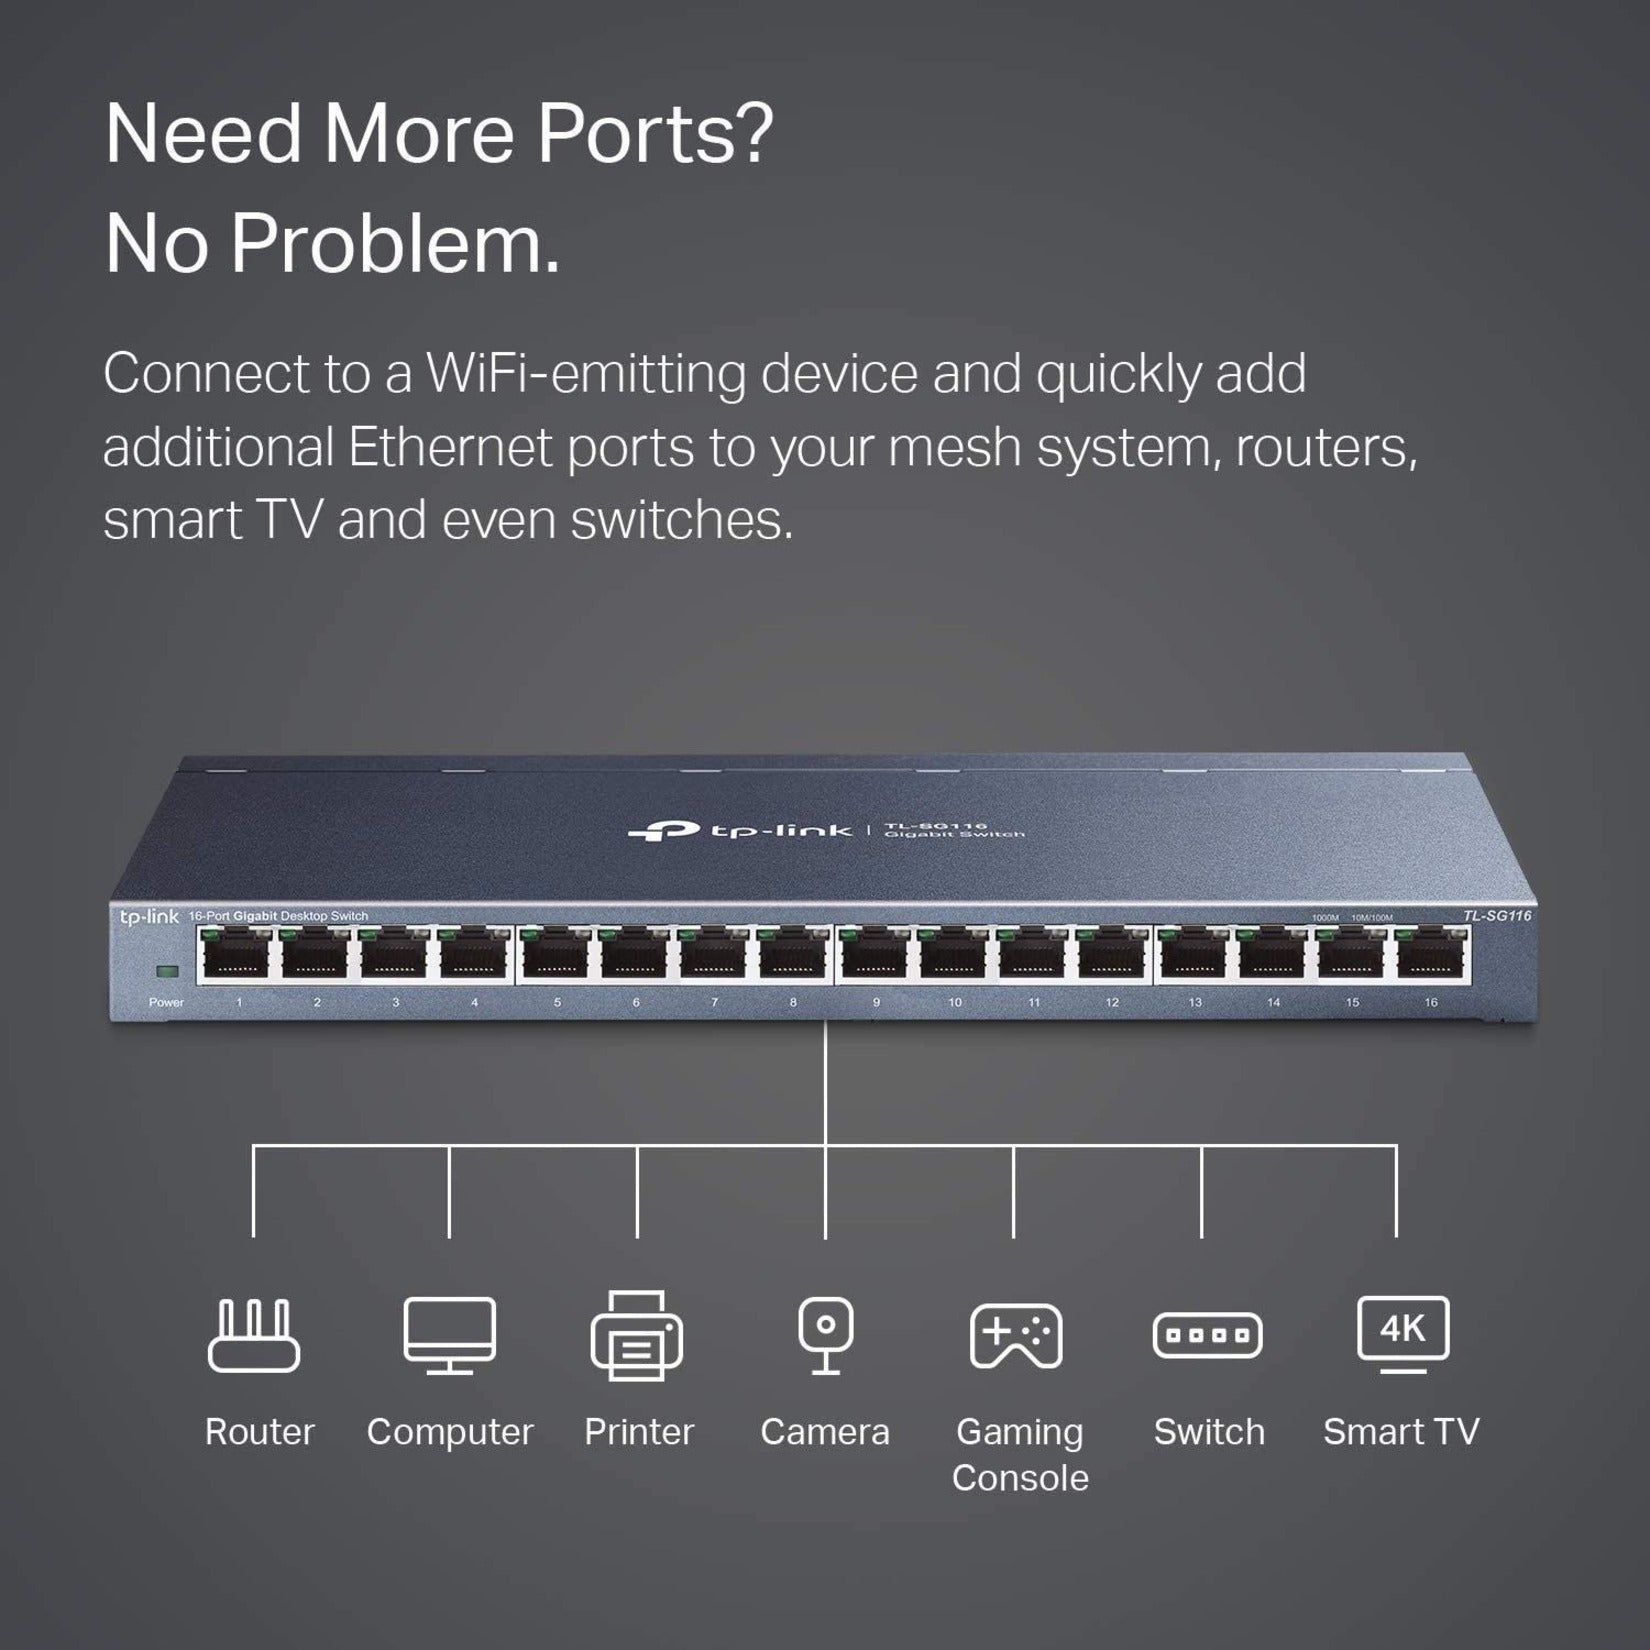 TP-Link TL-SG116 - 16-Port Gigabit Ethernet Network Switch